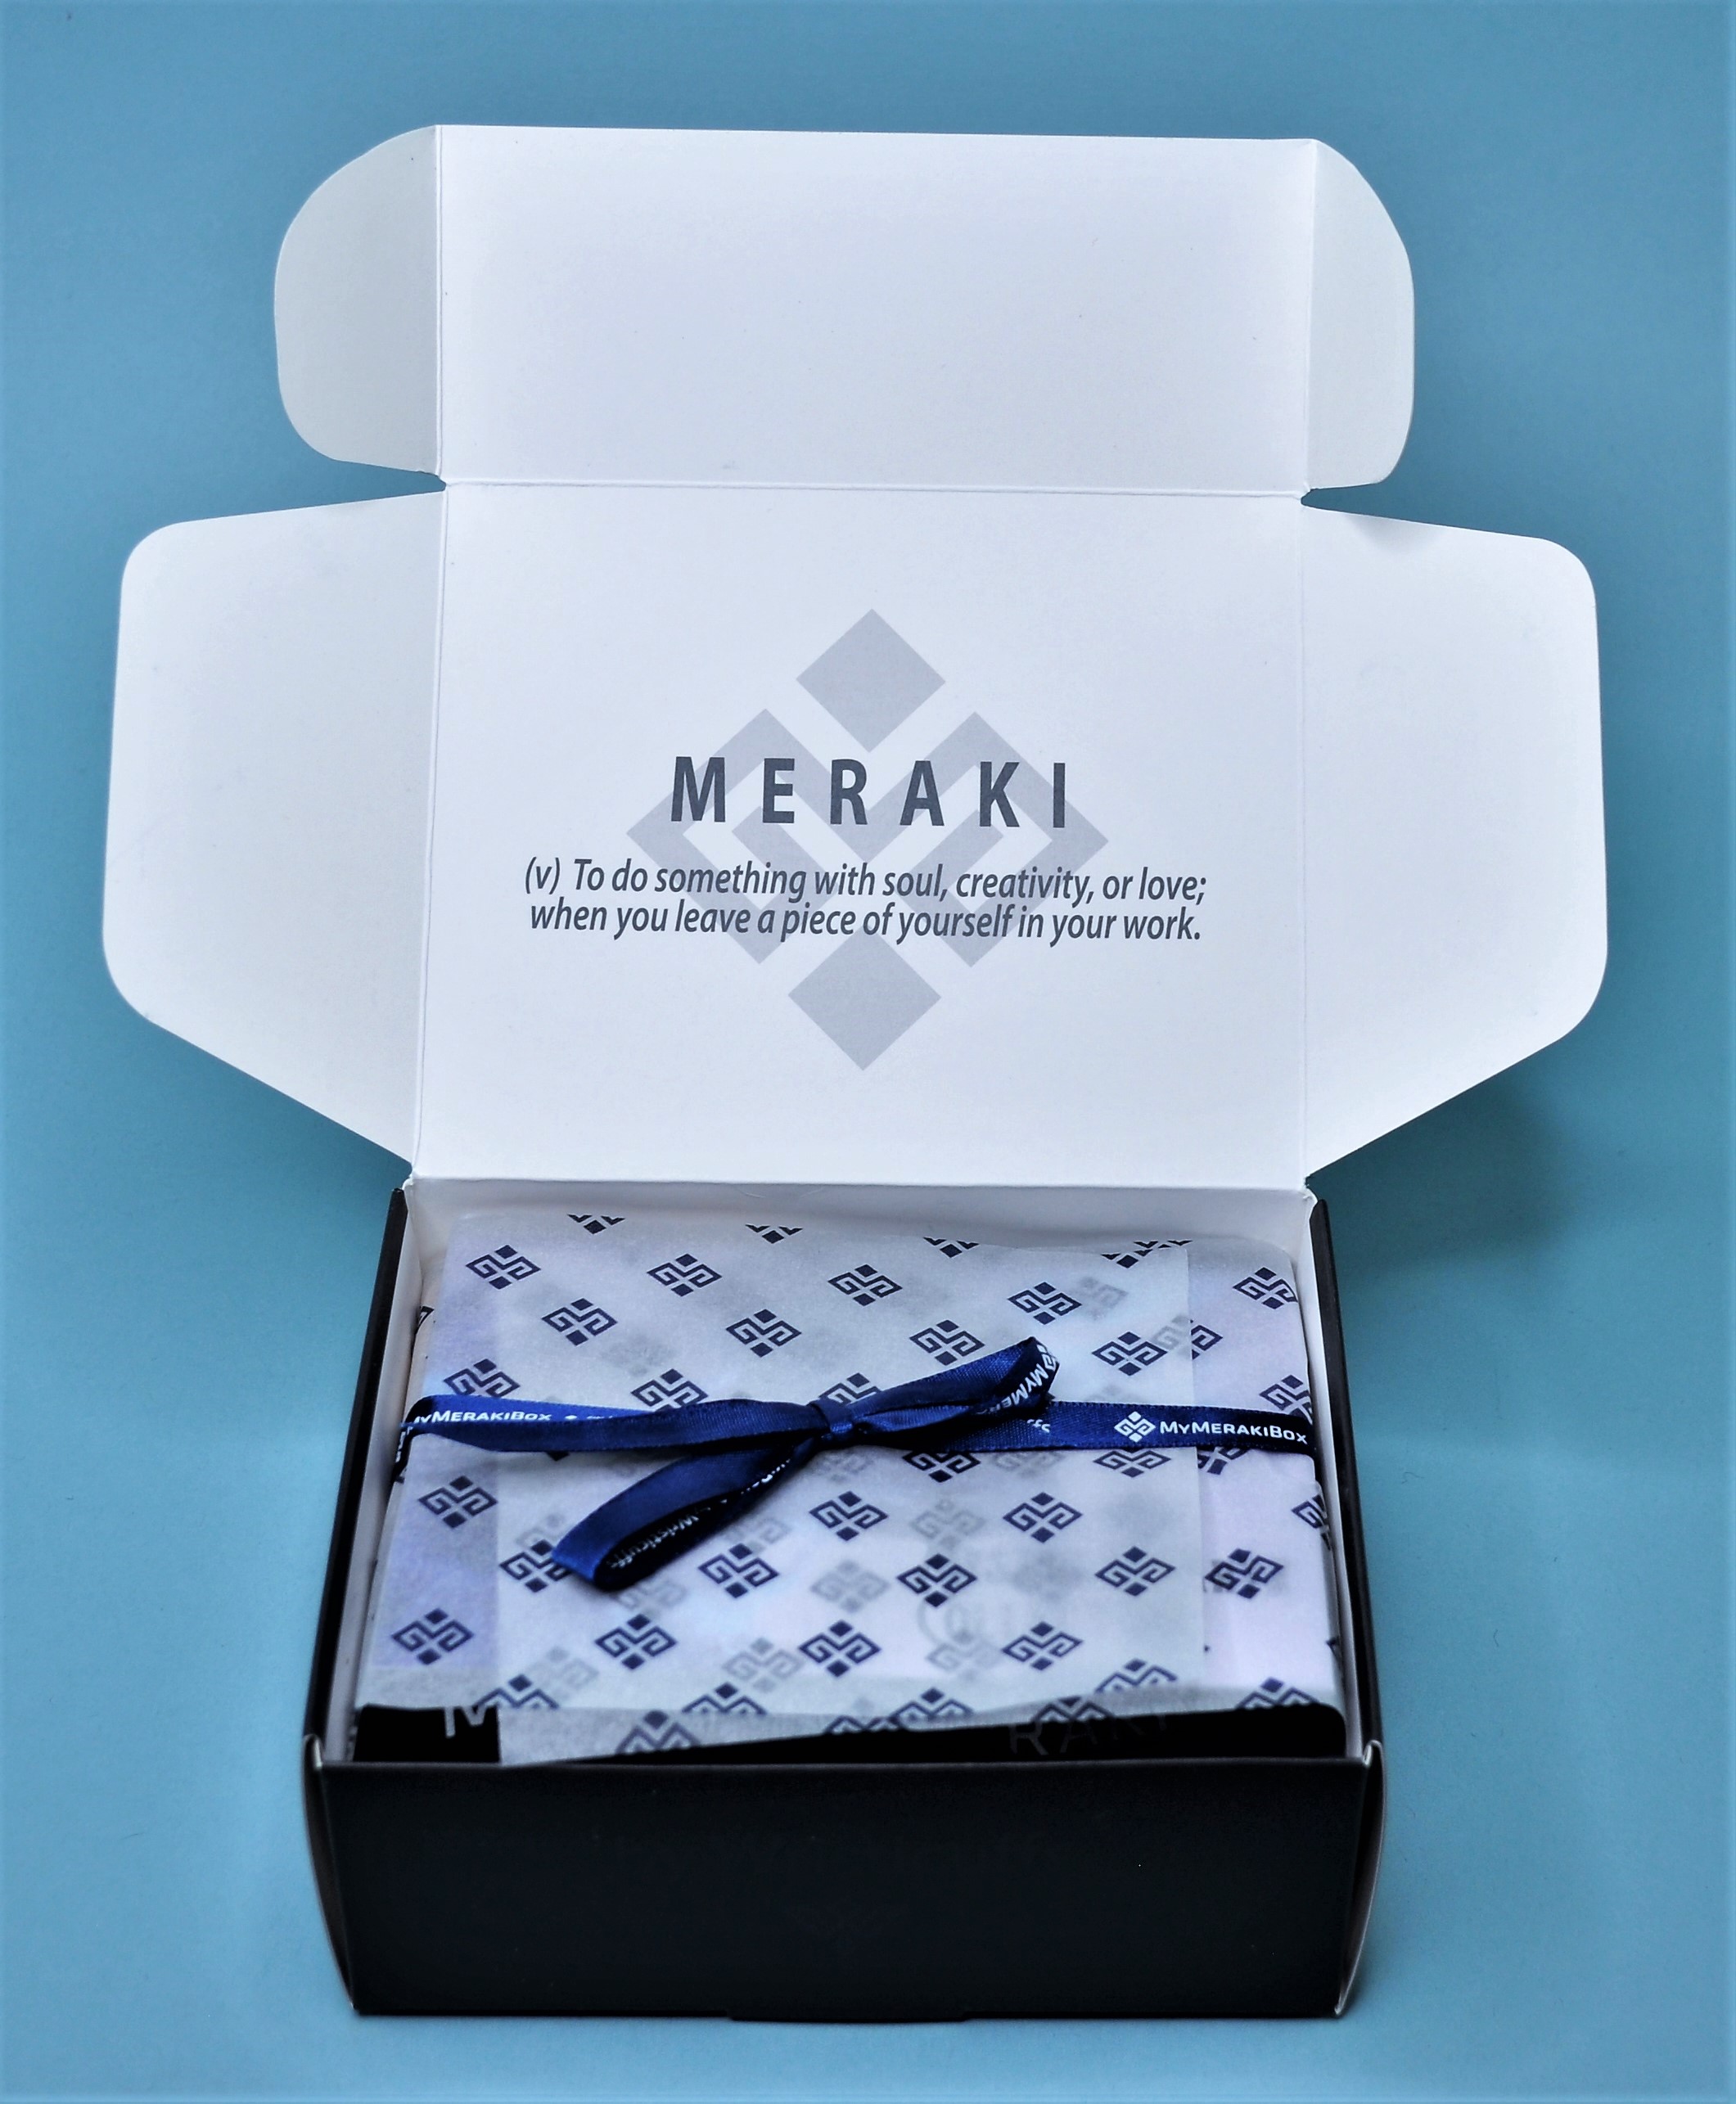 My Meraki Box; My Meraki; Wristicuffs; Box Subscription; Subscription Box; Bling; Jewelry Box; Jewelry Subscription Box; Boho Jewelry; Wristicuffs Jewelry;